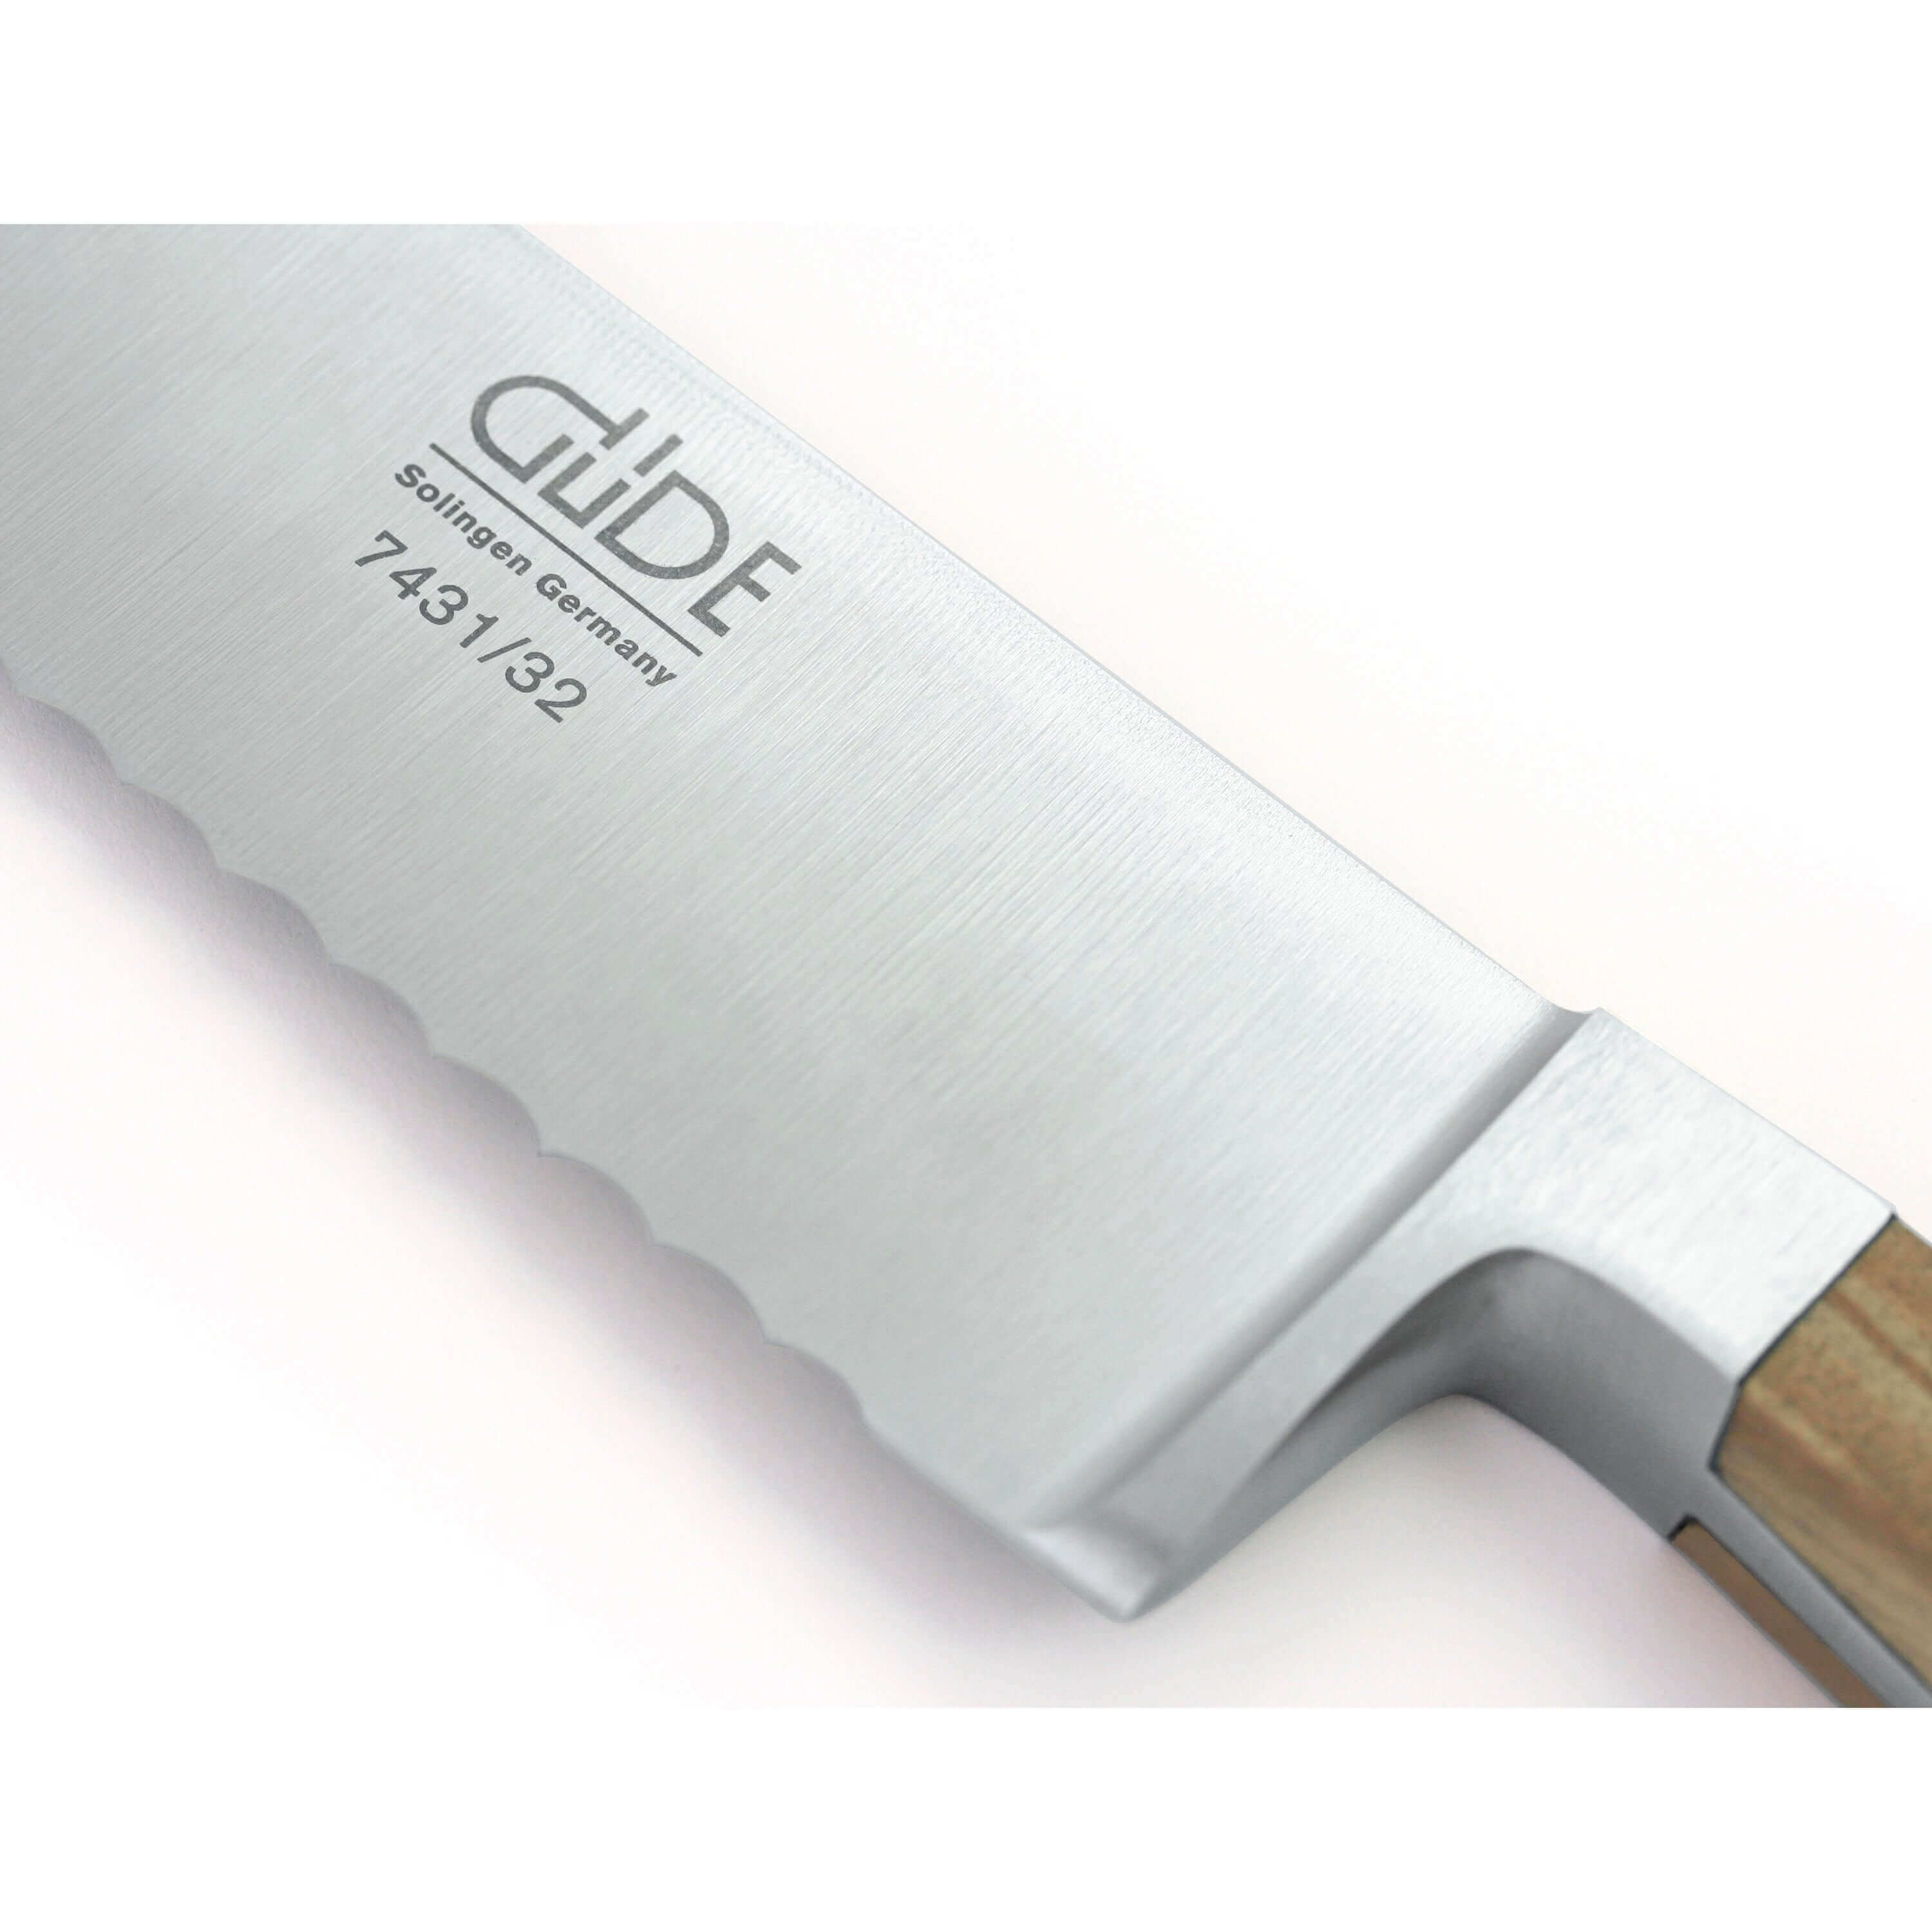 ALPHA OLIVE | Bread Knife Franz Dude 12.5 " Left hand Version| Forged steel / Olive Wood Handle